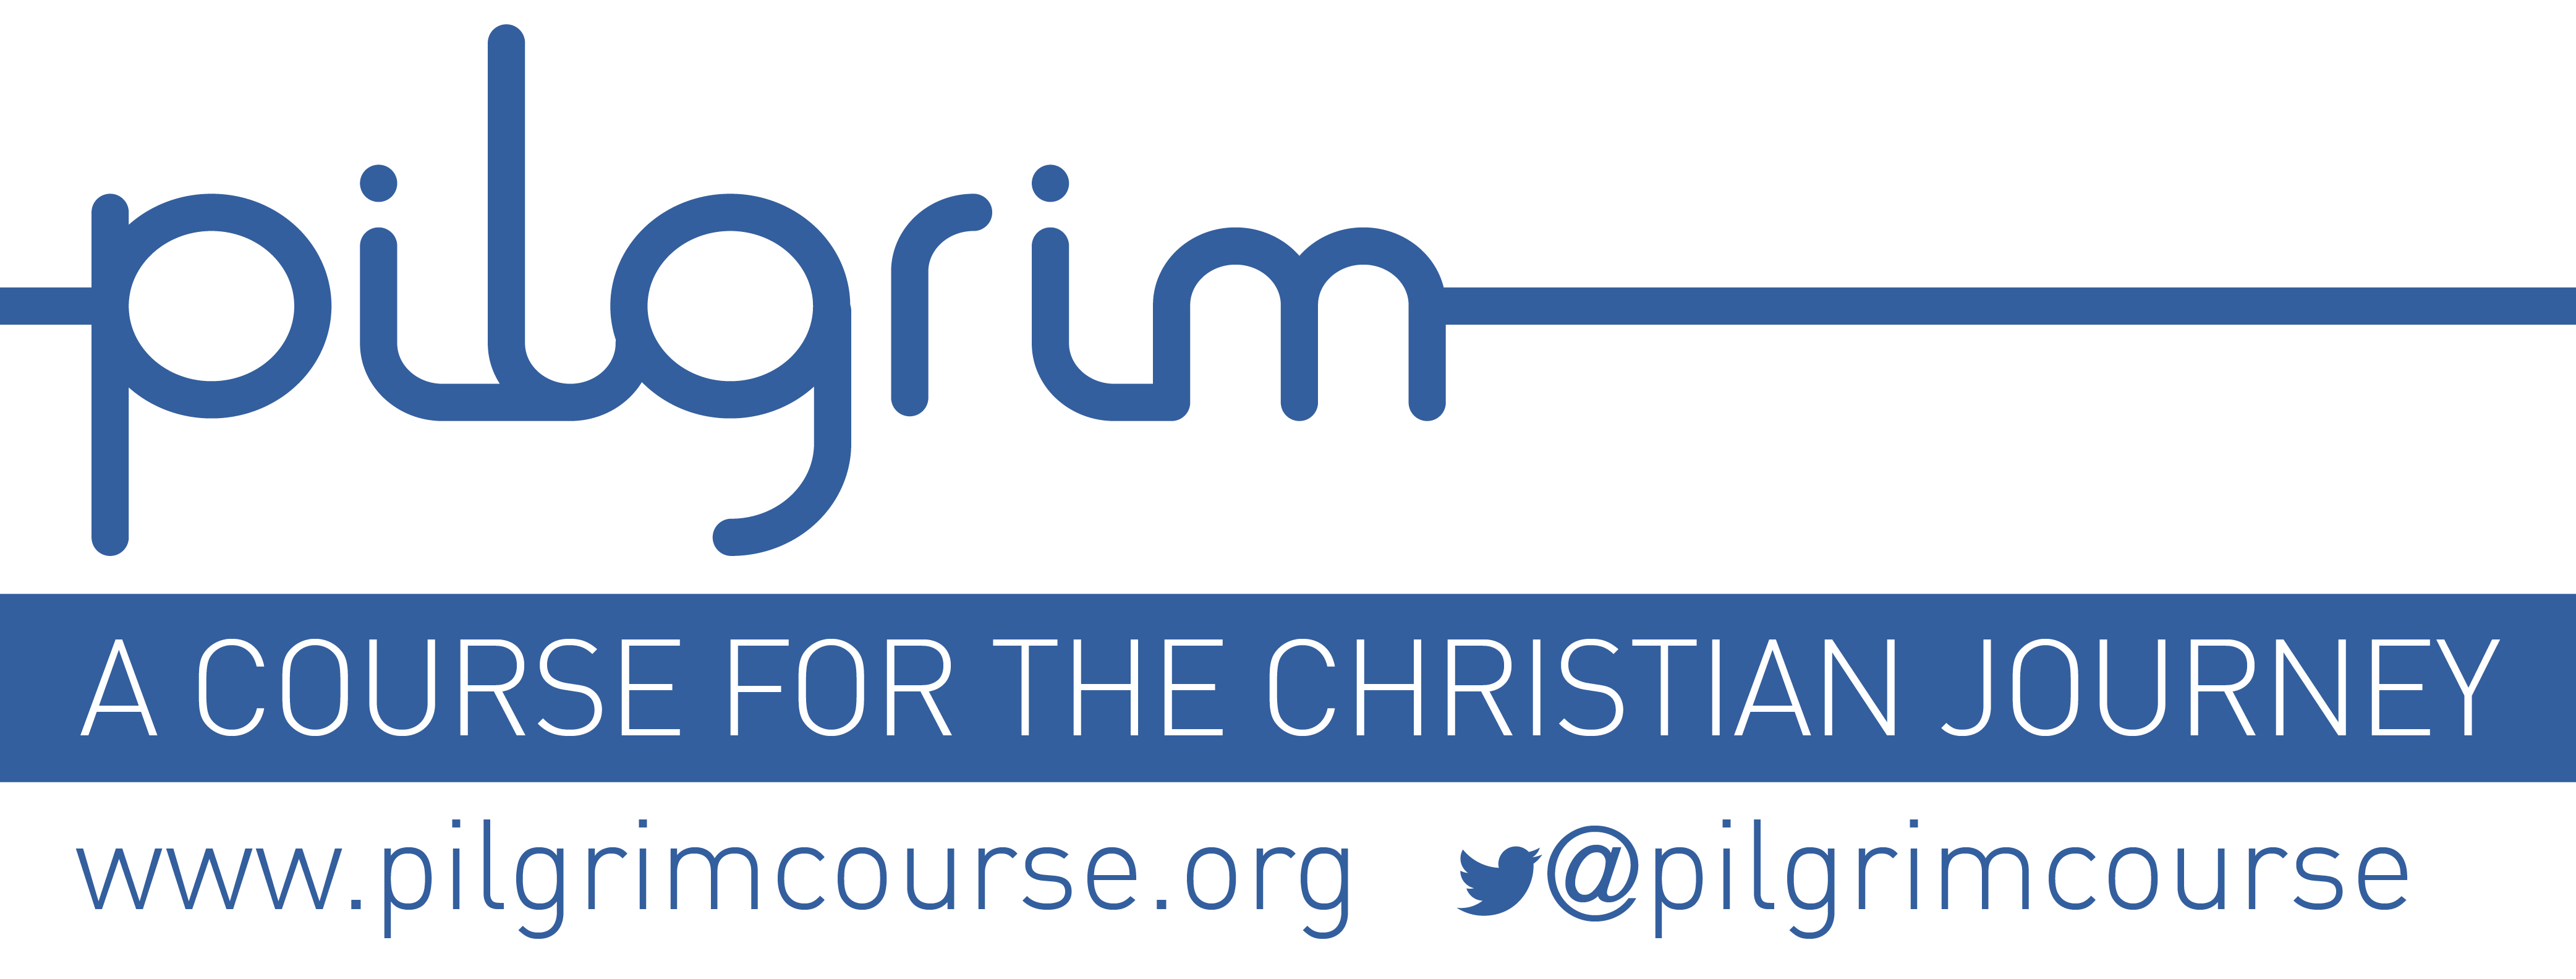 Pilgrim course